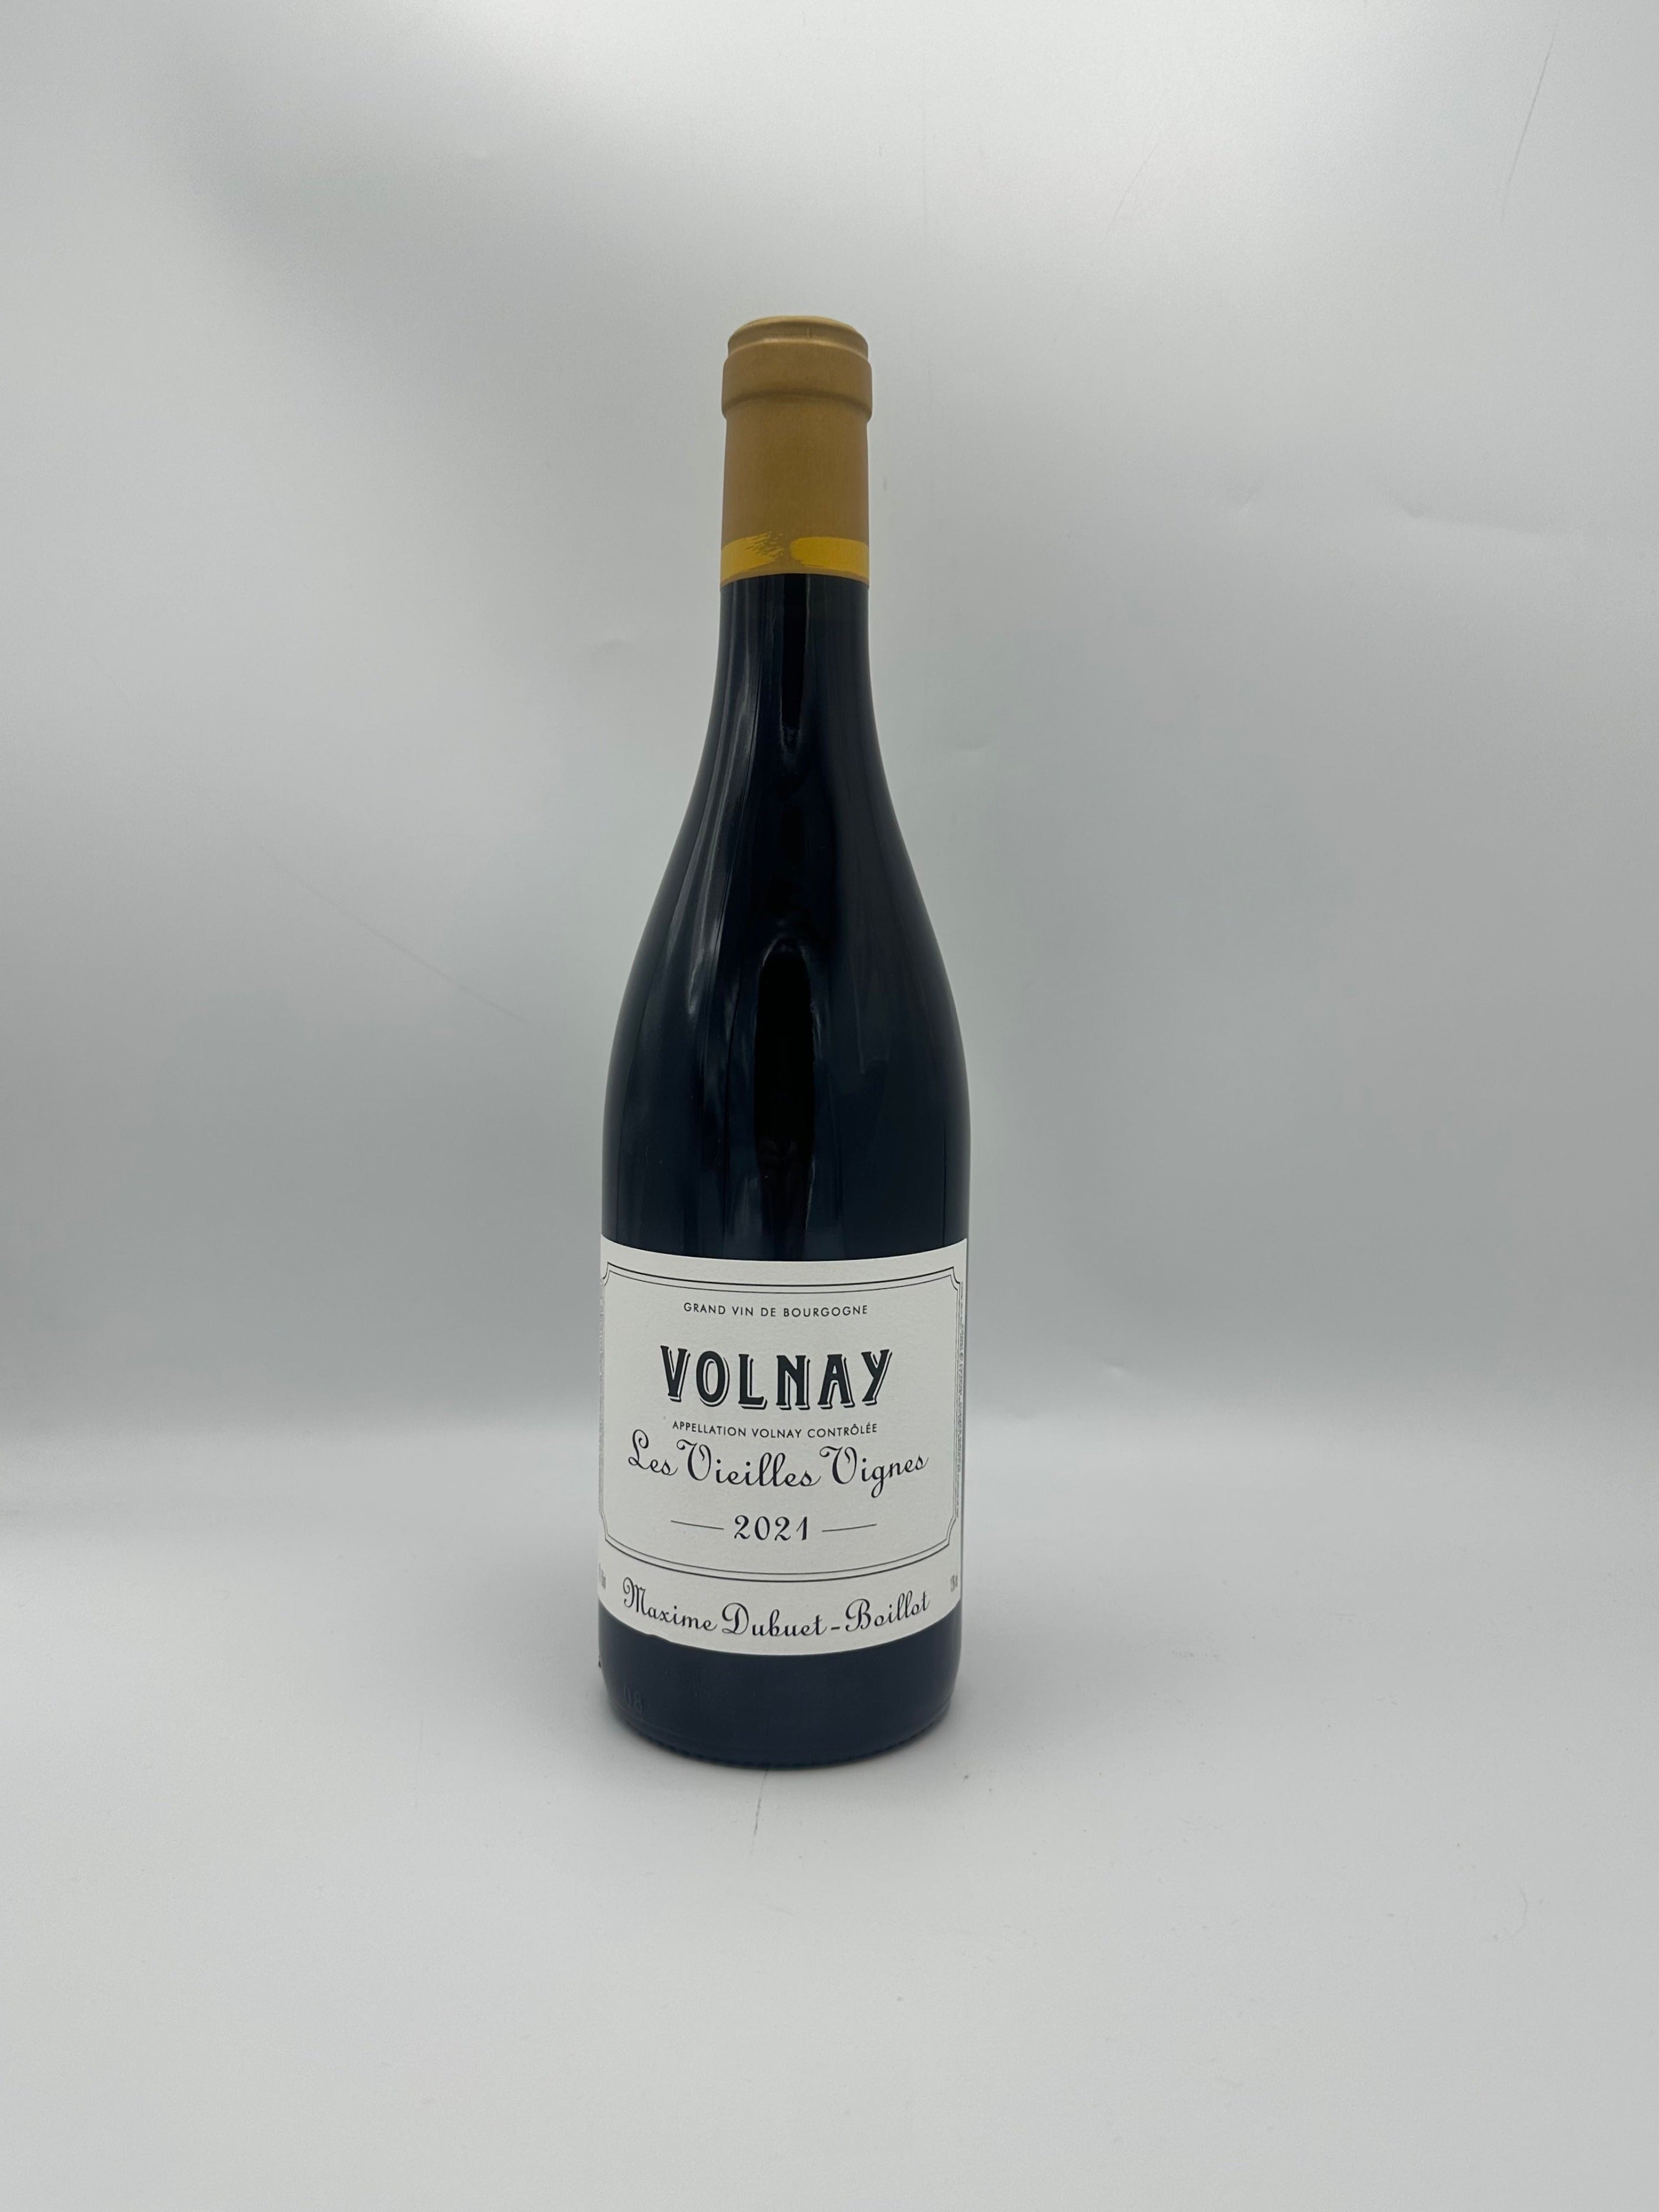 Volnay "Les Vieilles Vignes" 2022 Rouge - Maxime Dubuet Boillot